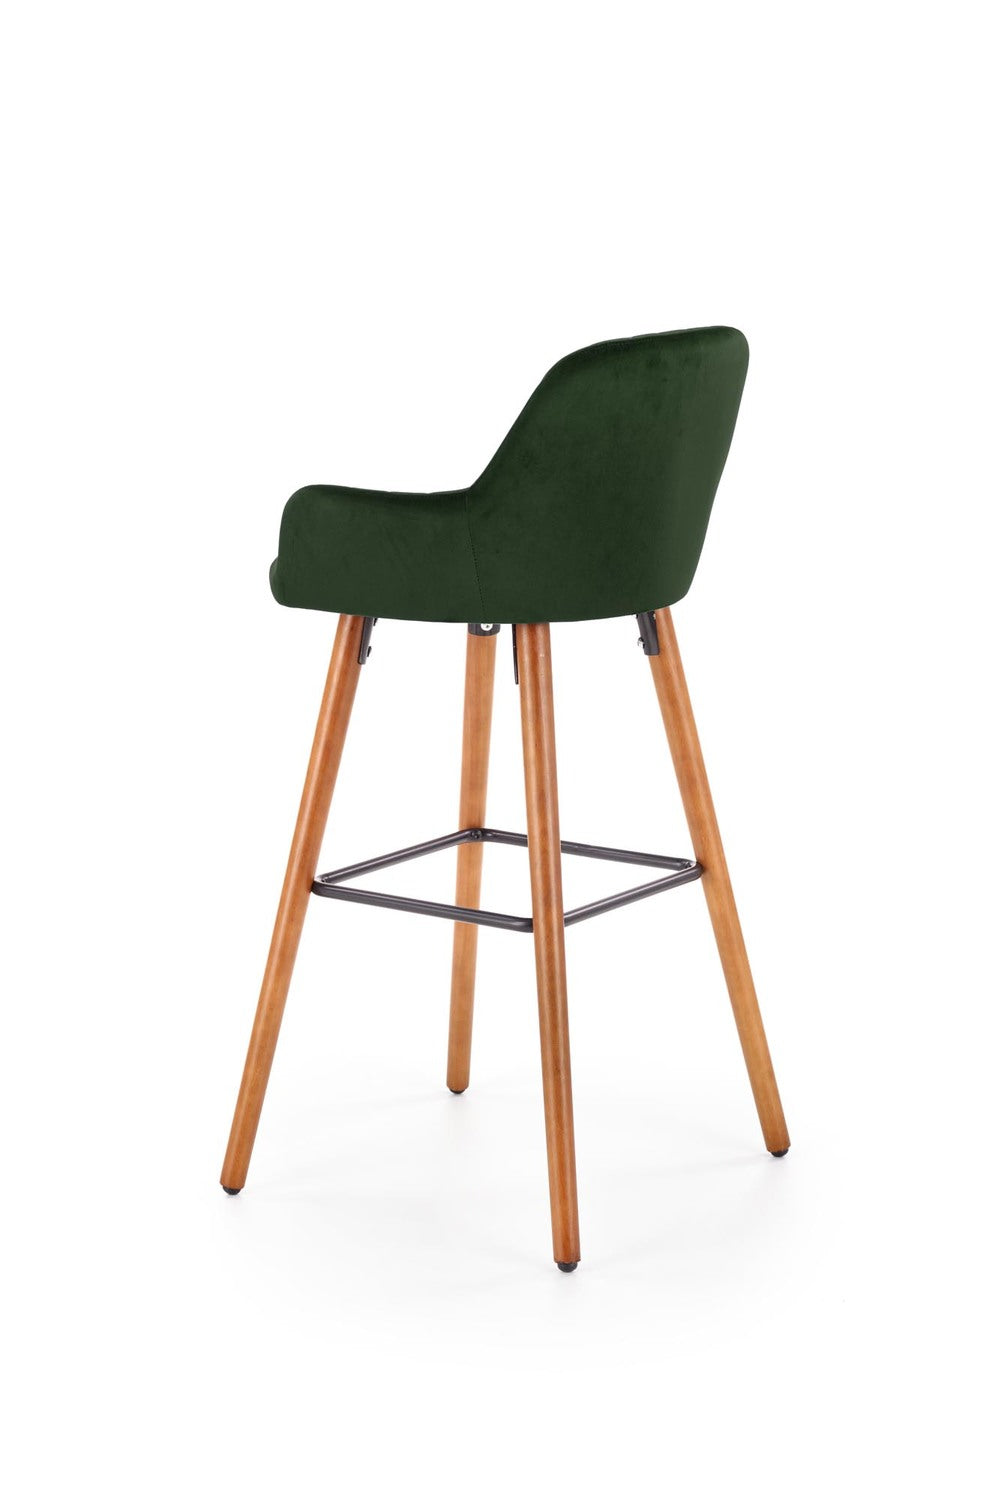 LN krēsls riekstkoks/tumši zaļs 47/49/98/75 cm - N1 Home